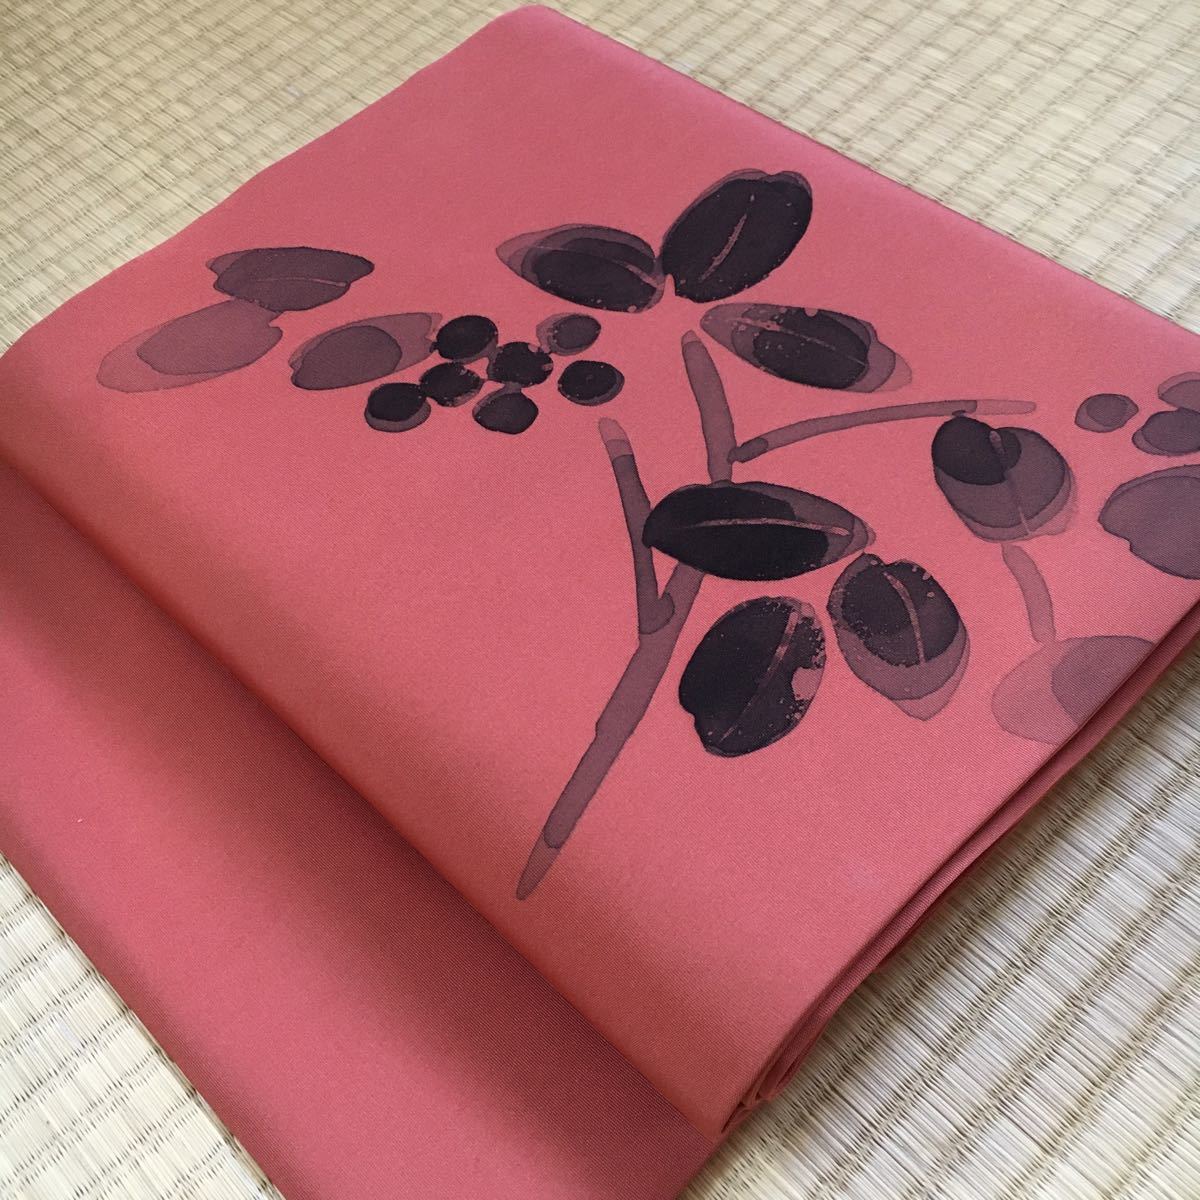 नागोया ओबी लाल टैन शाखा के फूल जैसे यामासिको रंगे हुए हाथ से पेंट की गई शैली सादा चाय समारोह चाय समारोह फूल व्यवस्था पाठ कोमोन त्सुमुगी दैनिक उपयोग ay335, बैंड, नागोया ओबी, अनुरूप